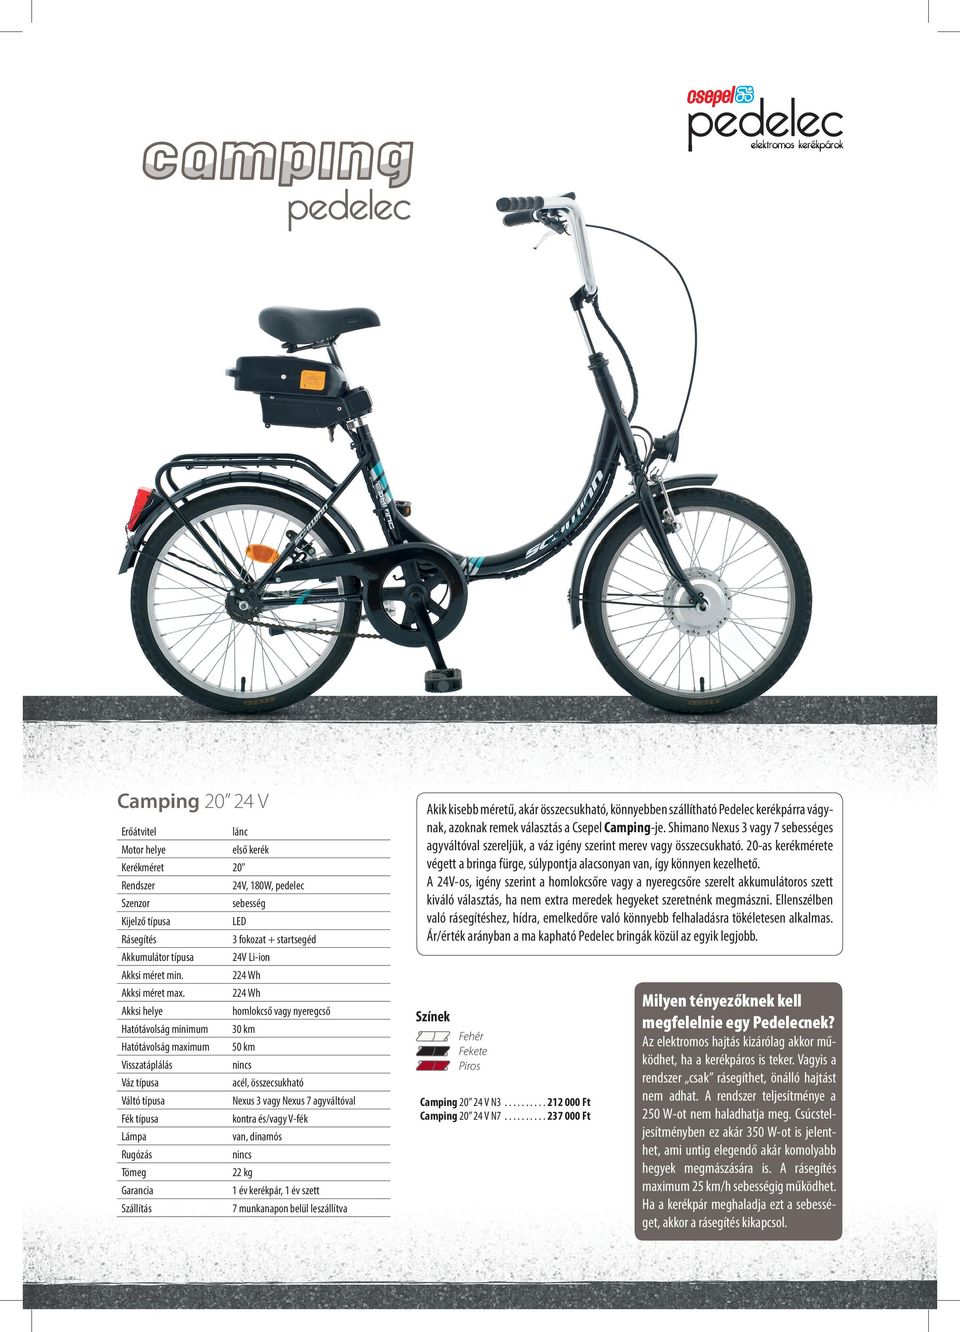 Budapest B V. Mi is az a Pedelec? Angol mozaikszó (Pedal Electric Cycle),  magyar megfelelőjeként elektromos rásegítésű kerékpár. - PDF Ingyenes  letöltés